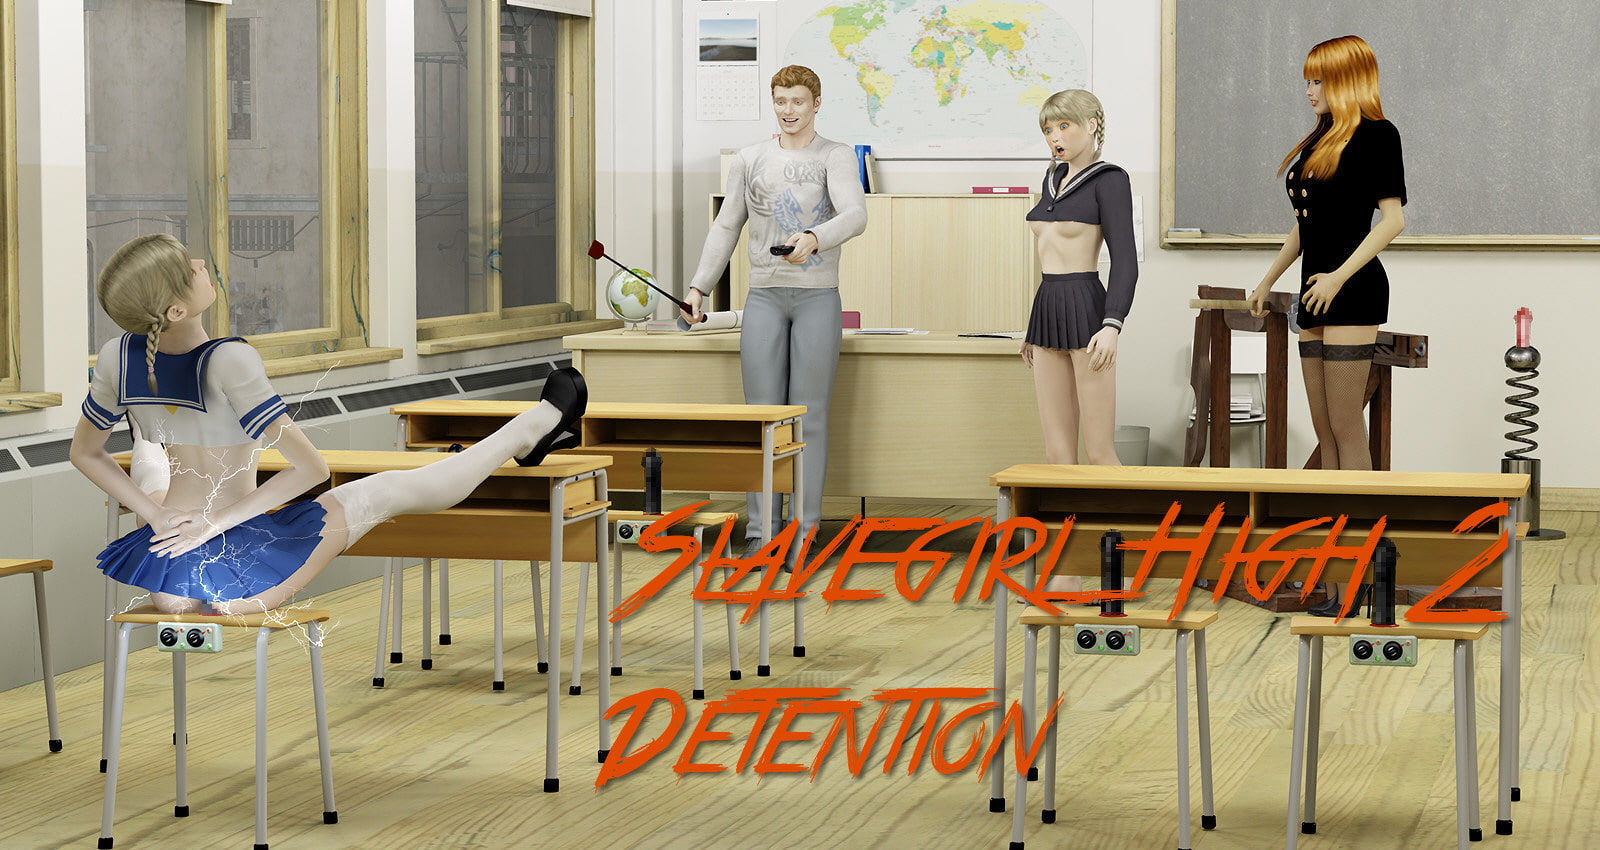 RJ352527 Slavegirl High 2 – Detention [20211024]